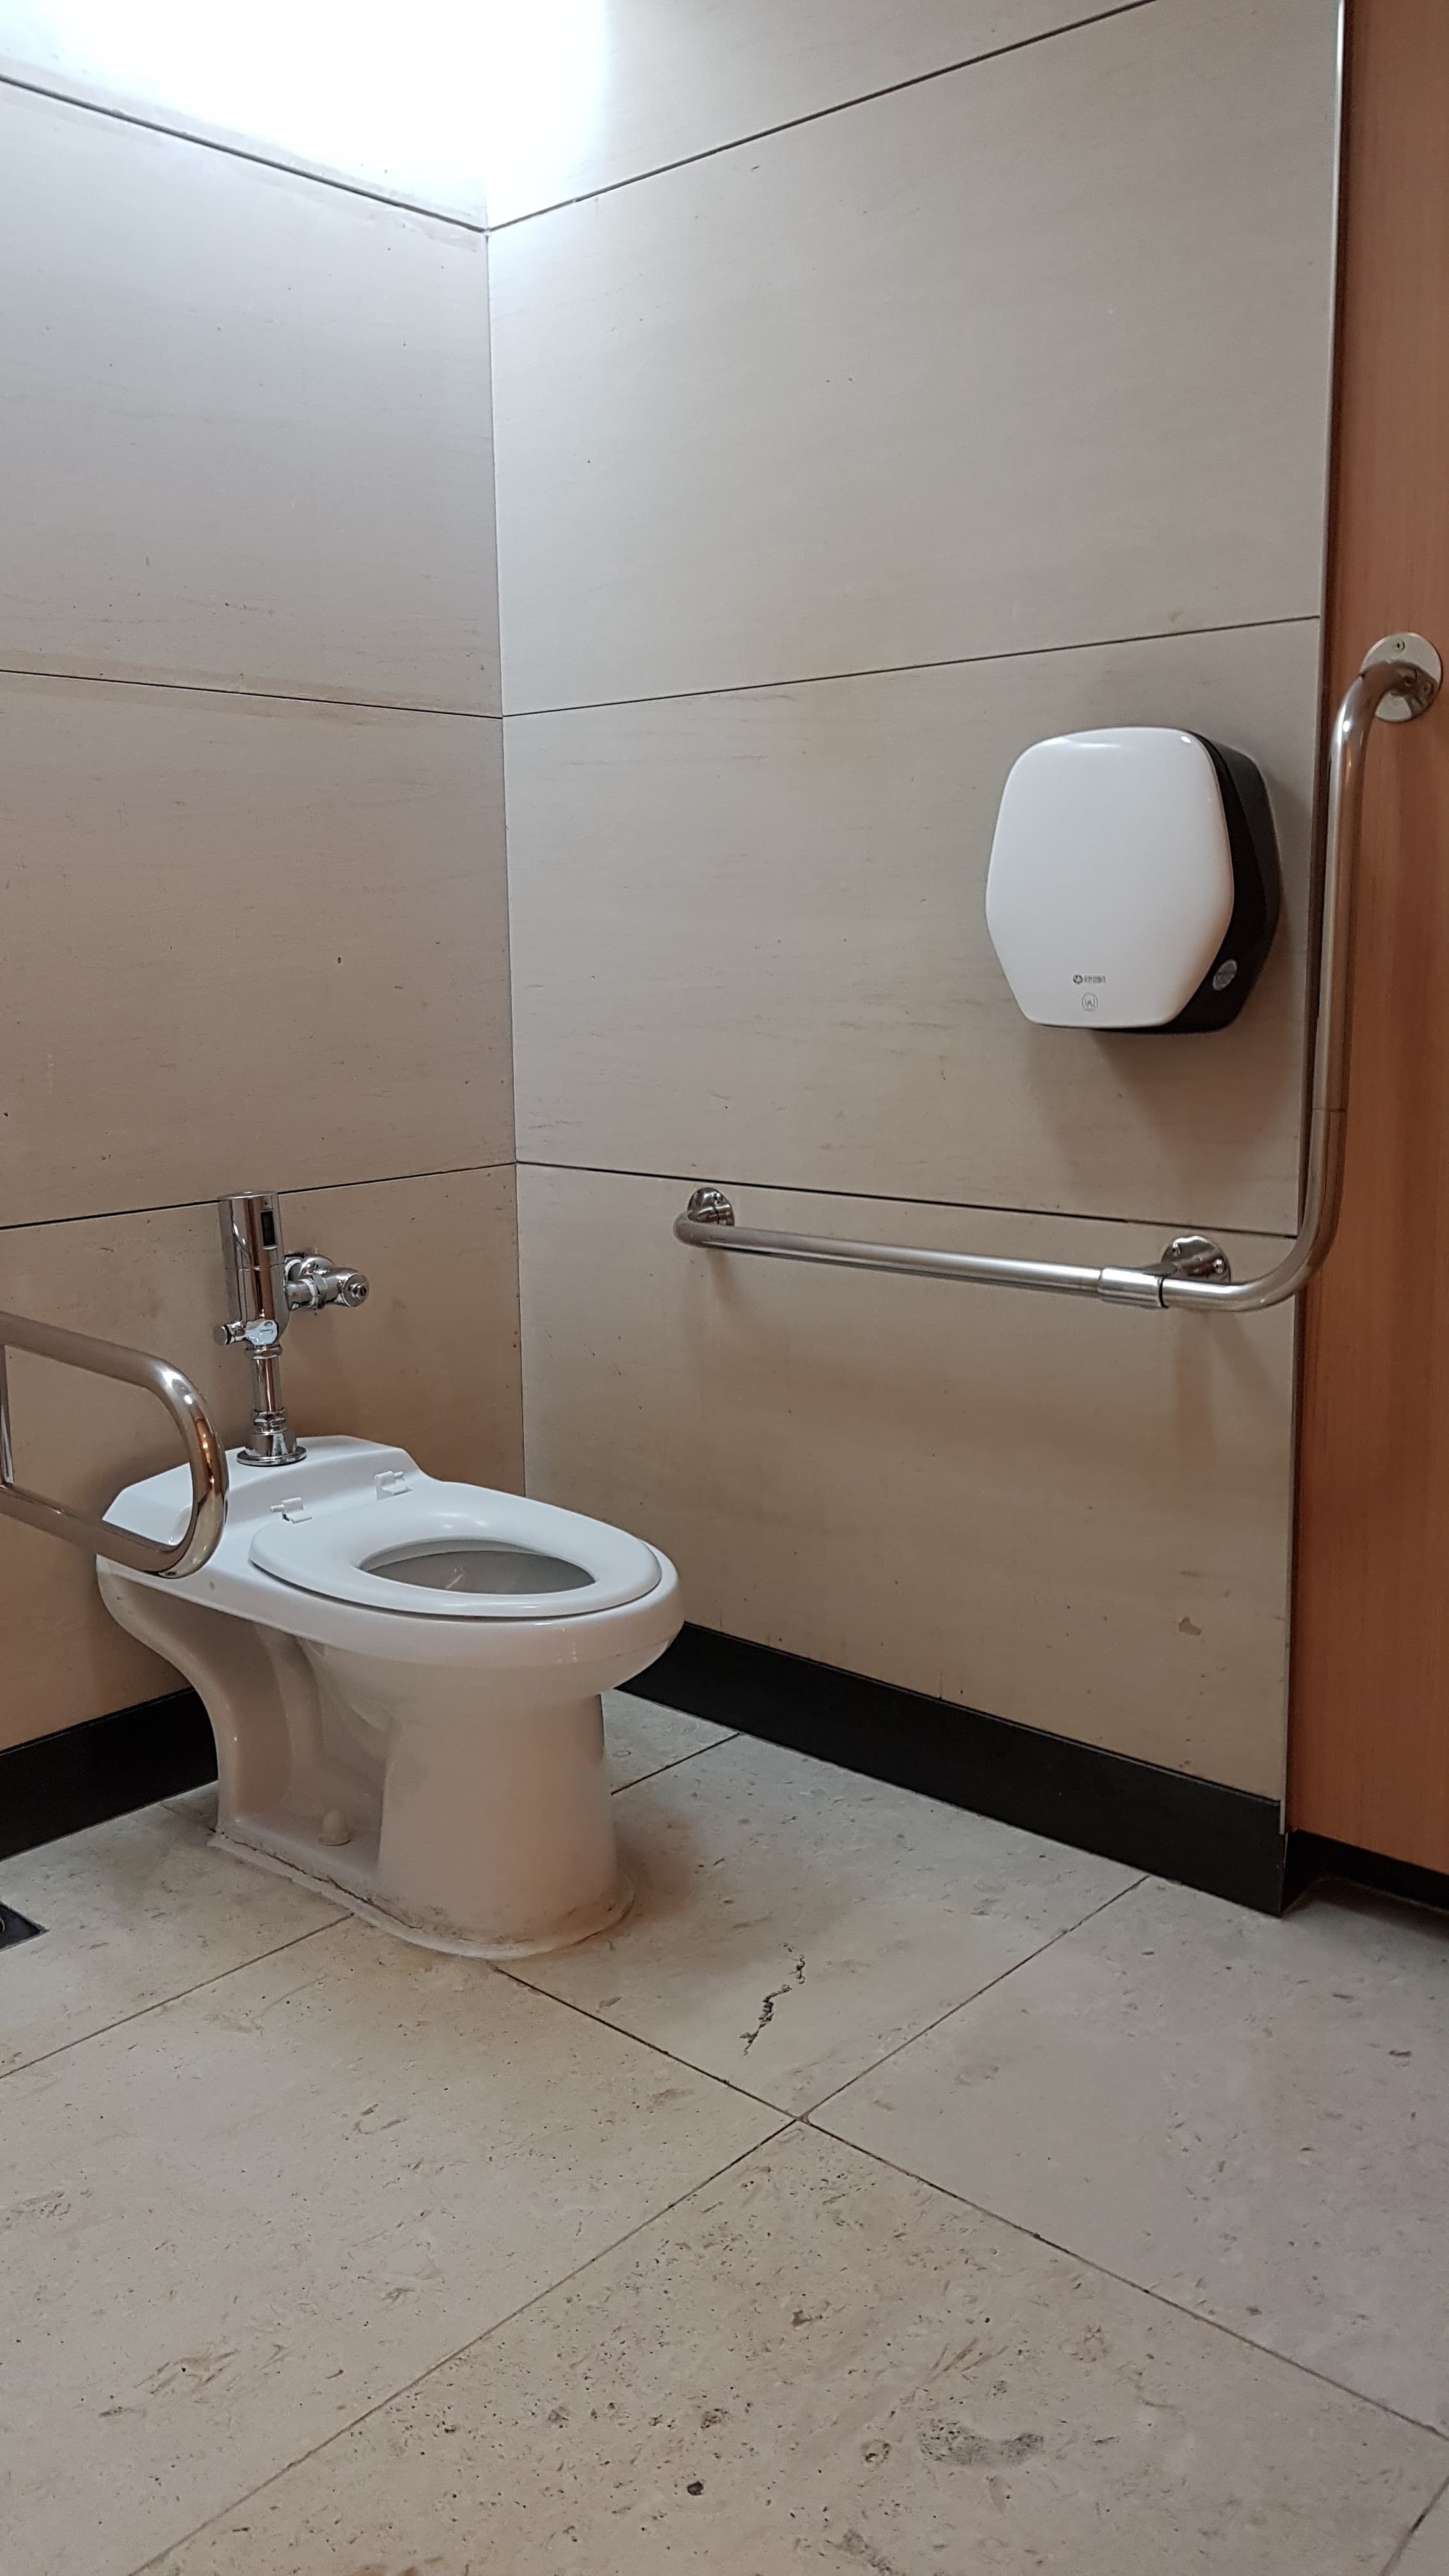 장애인 화장실0 : 공간이 넓어 휠체어 사용자가 편리하게 사용가능한 IFC몰 장애인 화장실 내부 전경